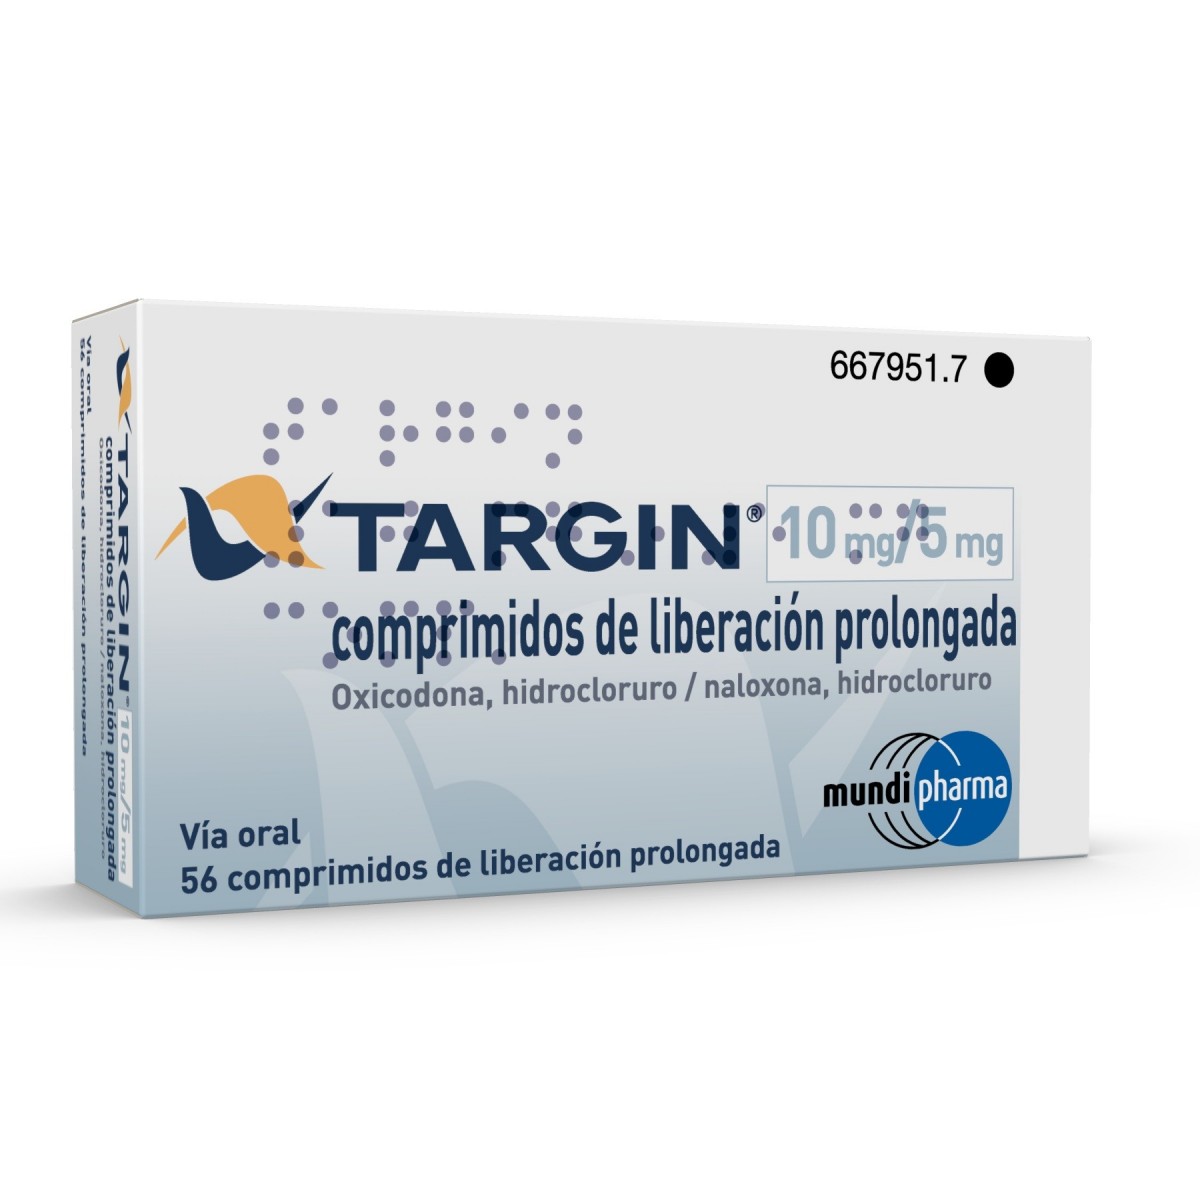 TARGIN 10 mg/5 mg COMPRIMIDOS DE LIBERACION PROLONGADA , 56 comprimidos fotografía del envase.